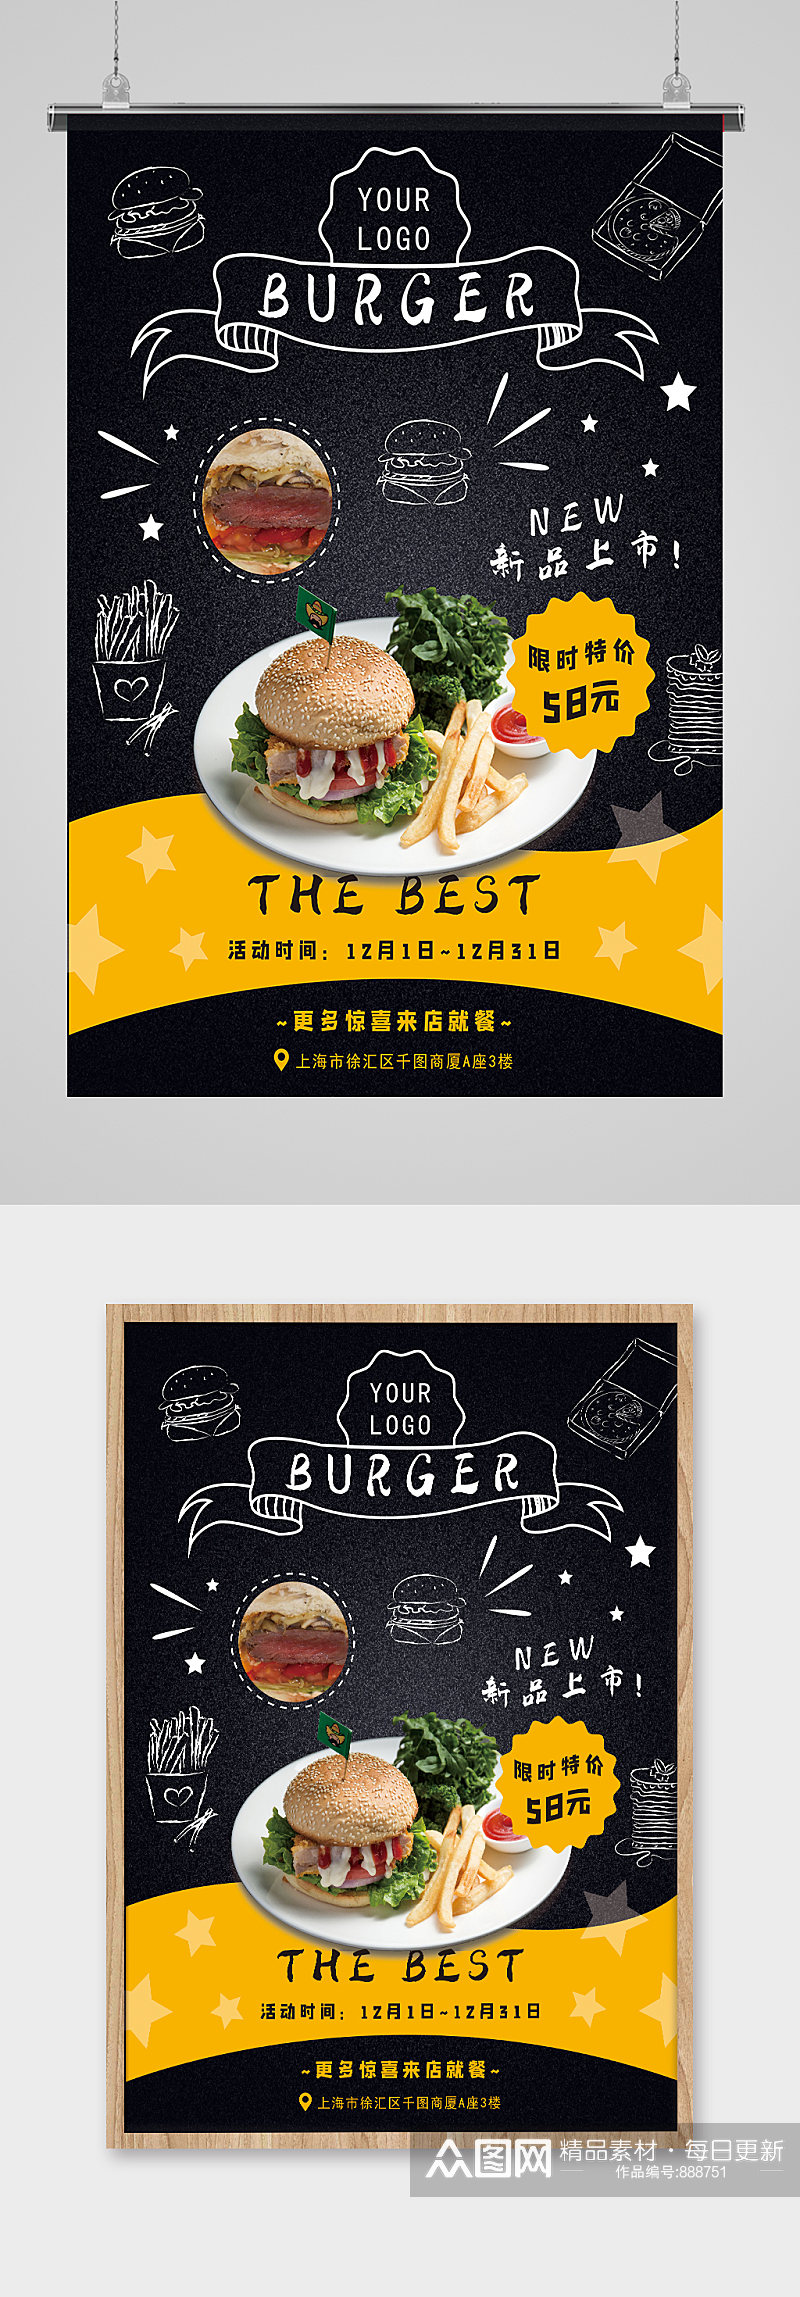 汉堡新品上市双鸡堡图片素材